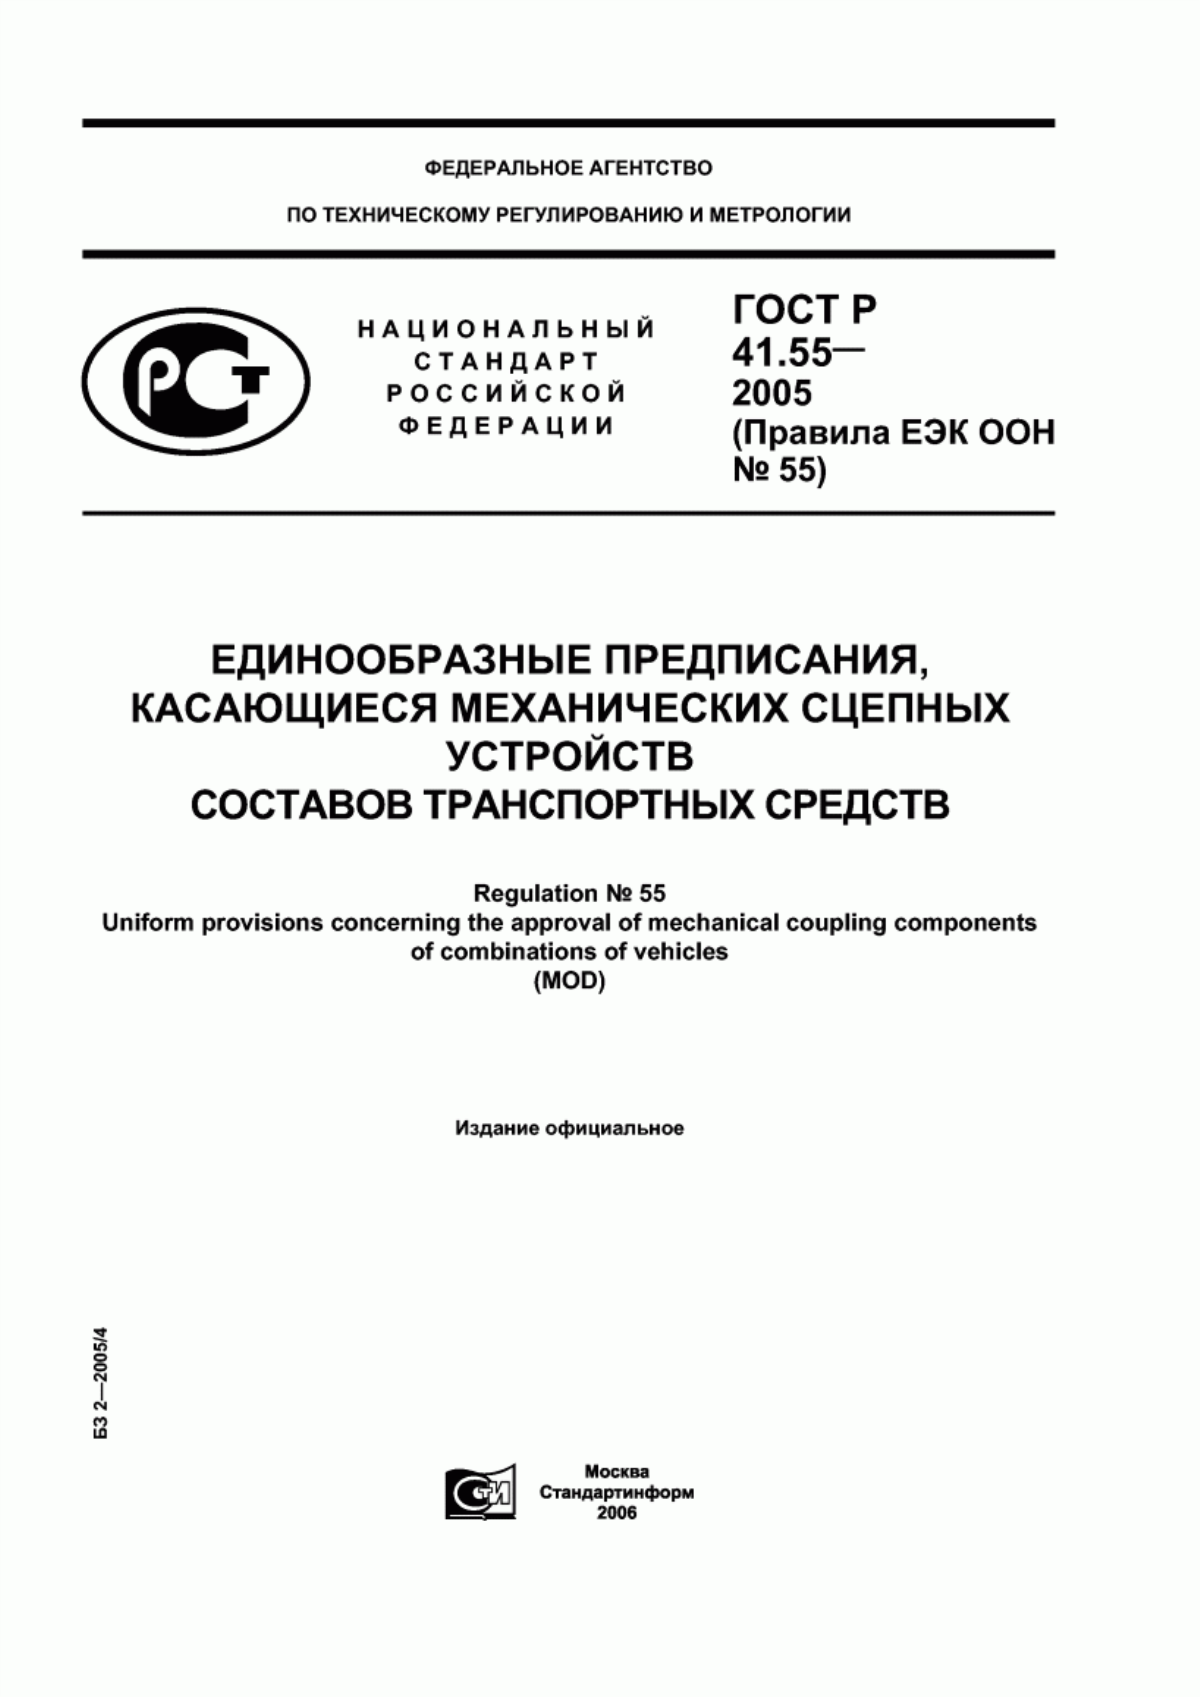 ГОСТ Р 41.55-2005 Единообразные предписания, касающиеся механических сцепных устройств составов транспортных средств